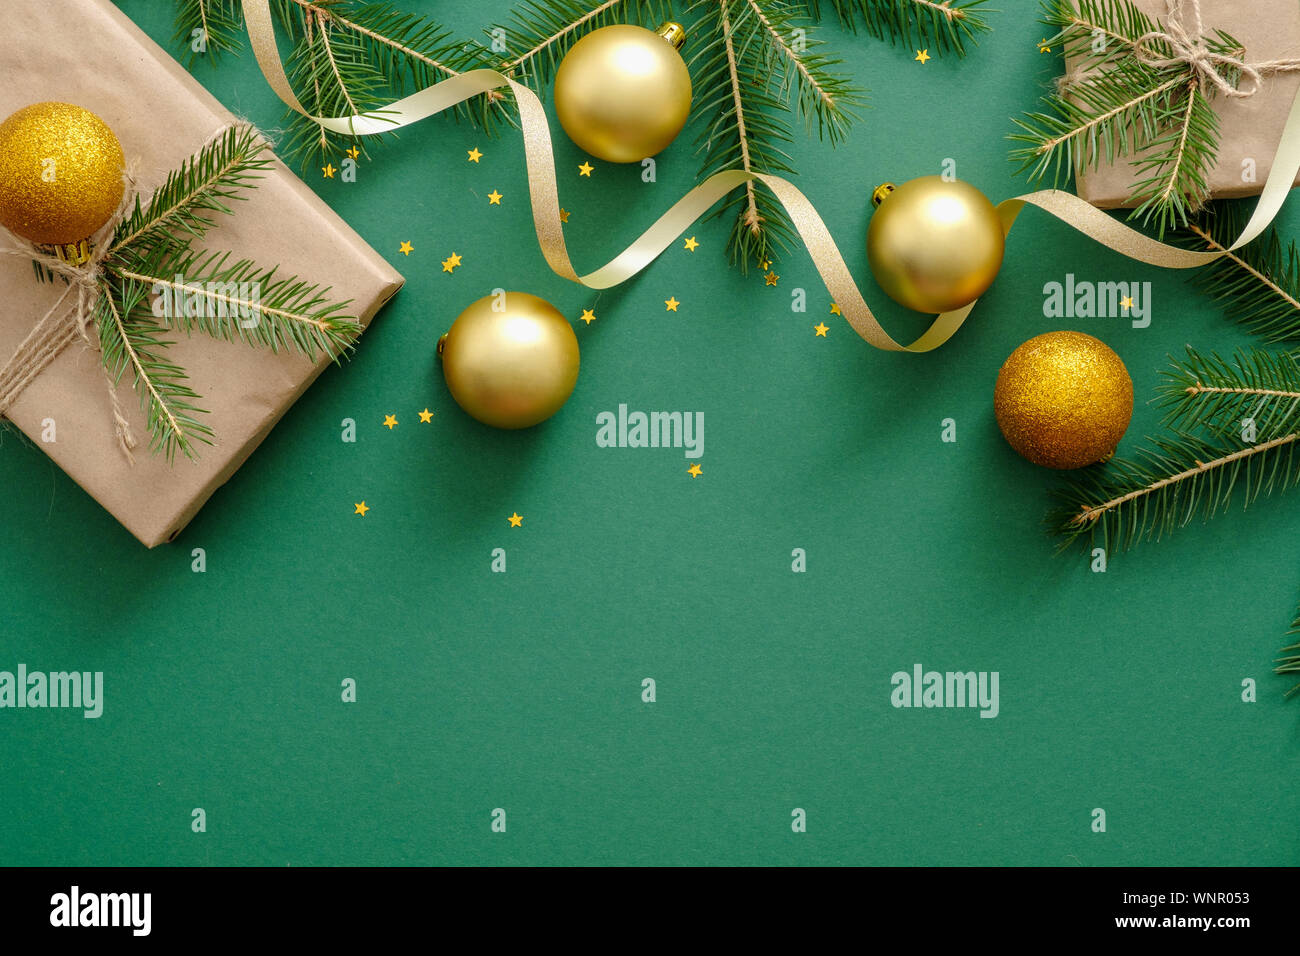 Natale flatlay composizione con le palle di Natale, regali, Abete rami, decorazione su sfondo verde. Appartamento laico, vista dall'alto, overhead. Xmas o Foto Stock